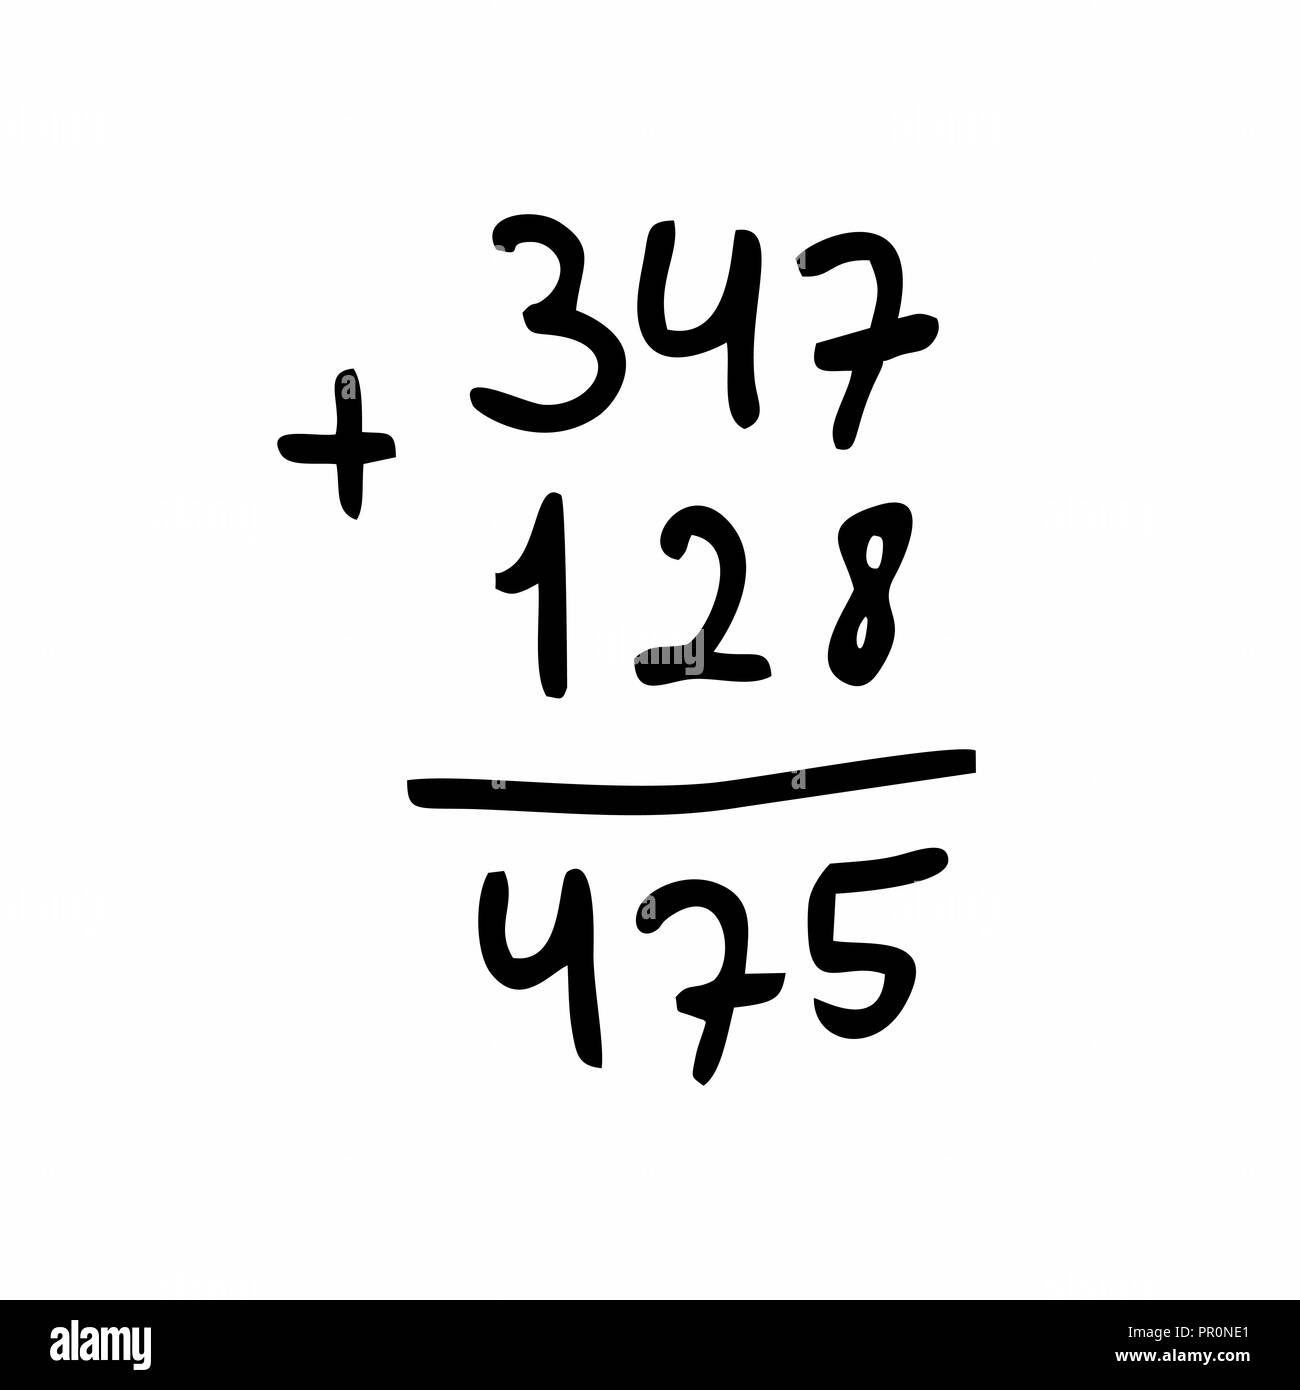 Freehand illustrazione di un aggiunta di calcolo. Contorni neri su sfondo bianco. Illustrazione Vettoriale